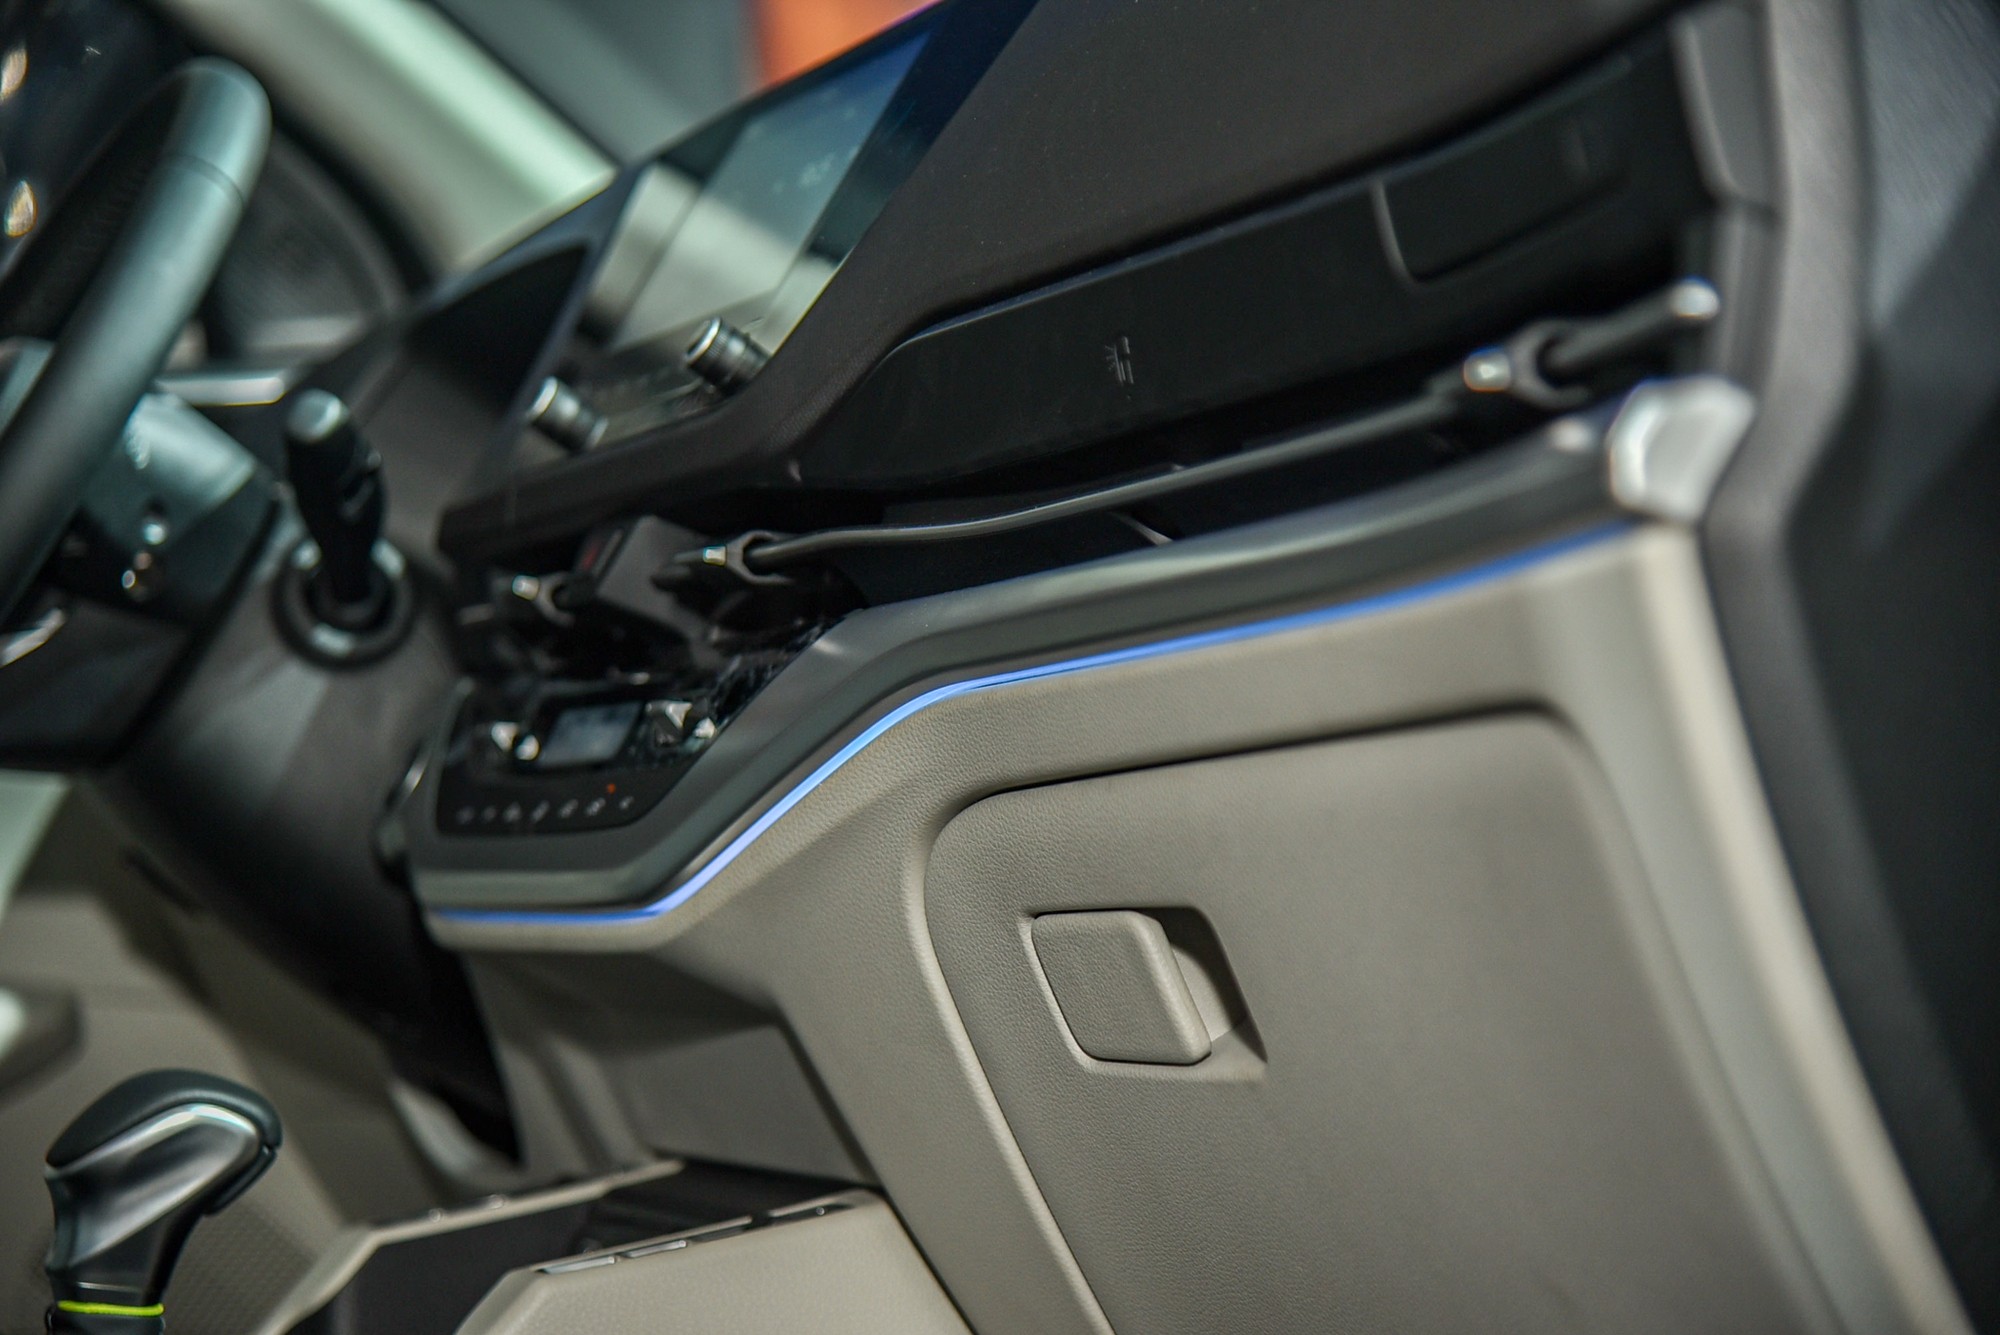 Chi tiết Kia Carens phiên bản xăng 1.5 Luxury: Giá 699 triệu đồng, thiếu nhiều trang bị so với phiên bản cao hơn - Ảnh 11.